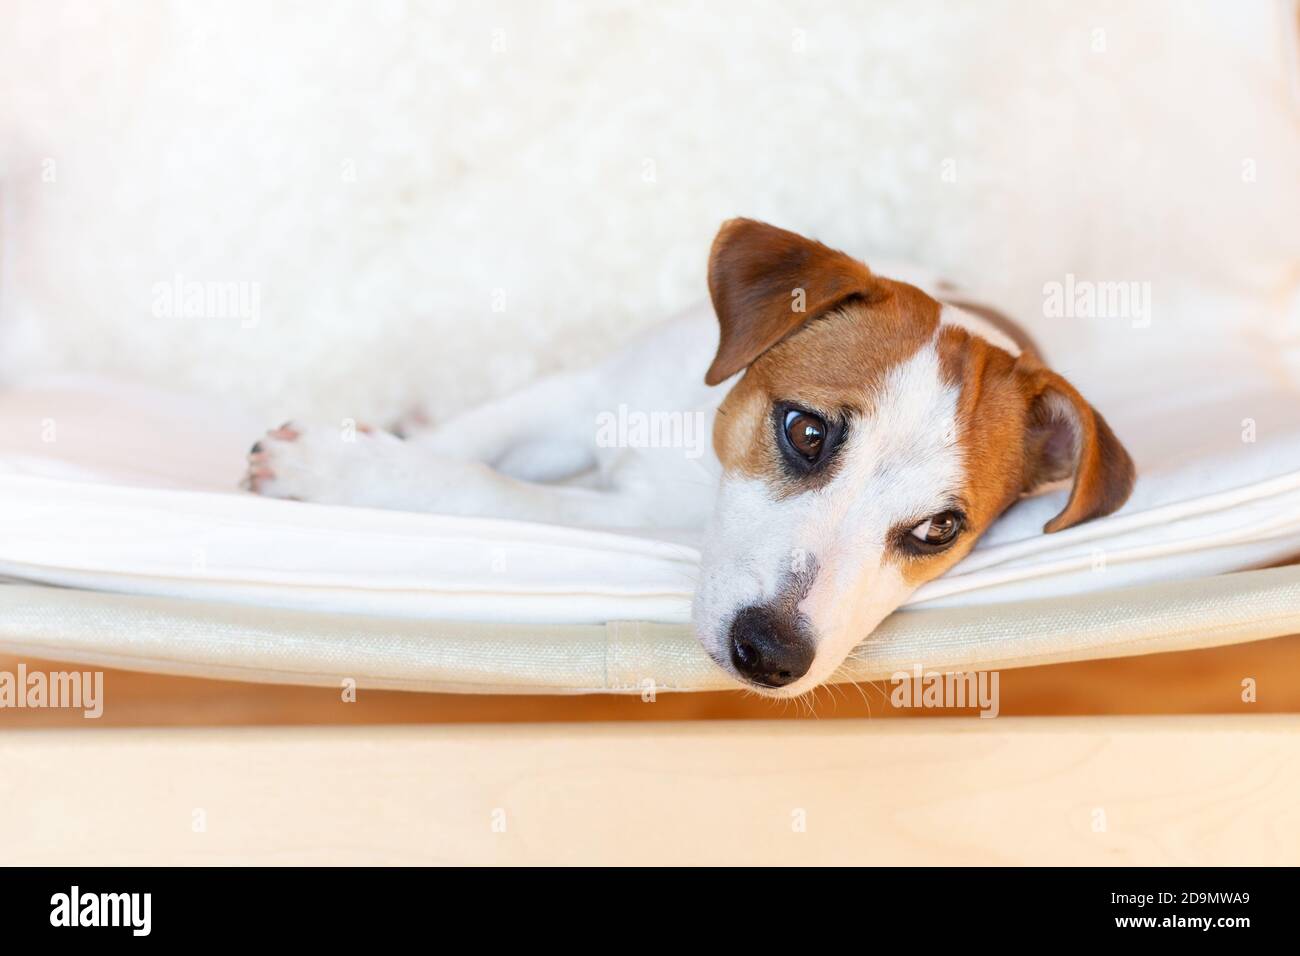 Ein schöner Hundejacker russell Terrier liegt in einem Stuhl auf seiner Seite, ruht, schaut zur Seite. Nahaufnahme eines Hundes. Heller Hintergrund, Kopierbereich. Stockfoto